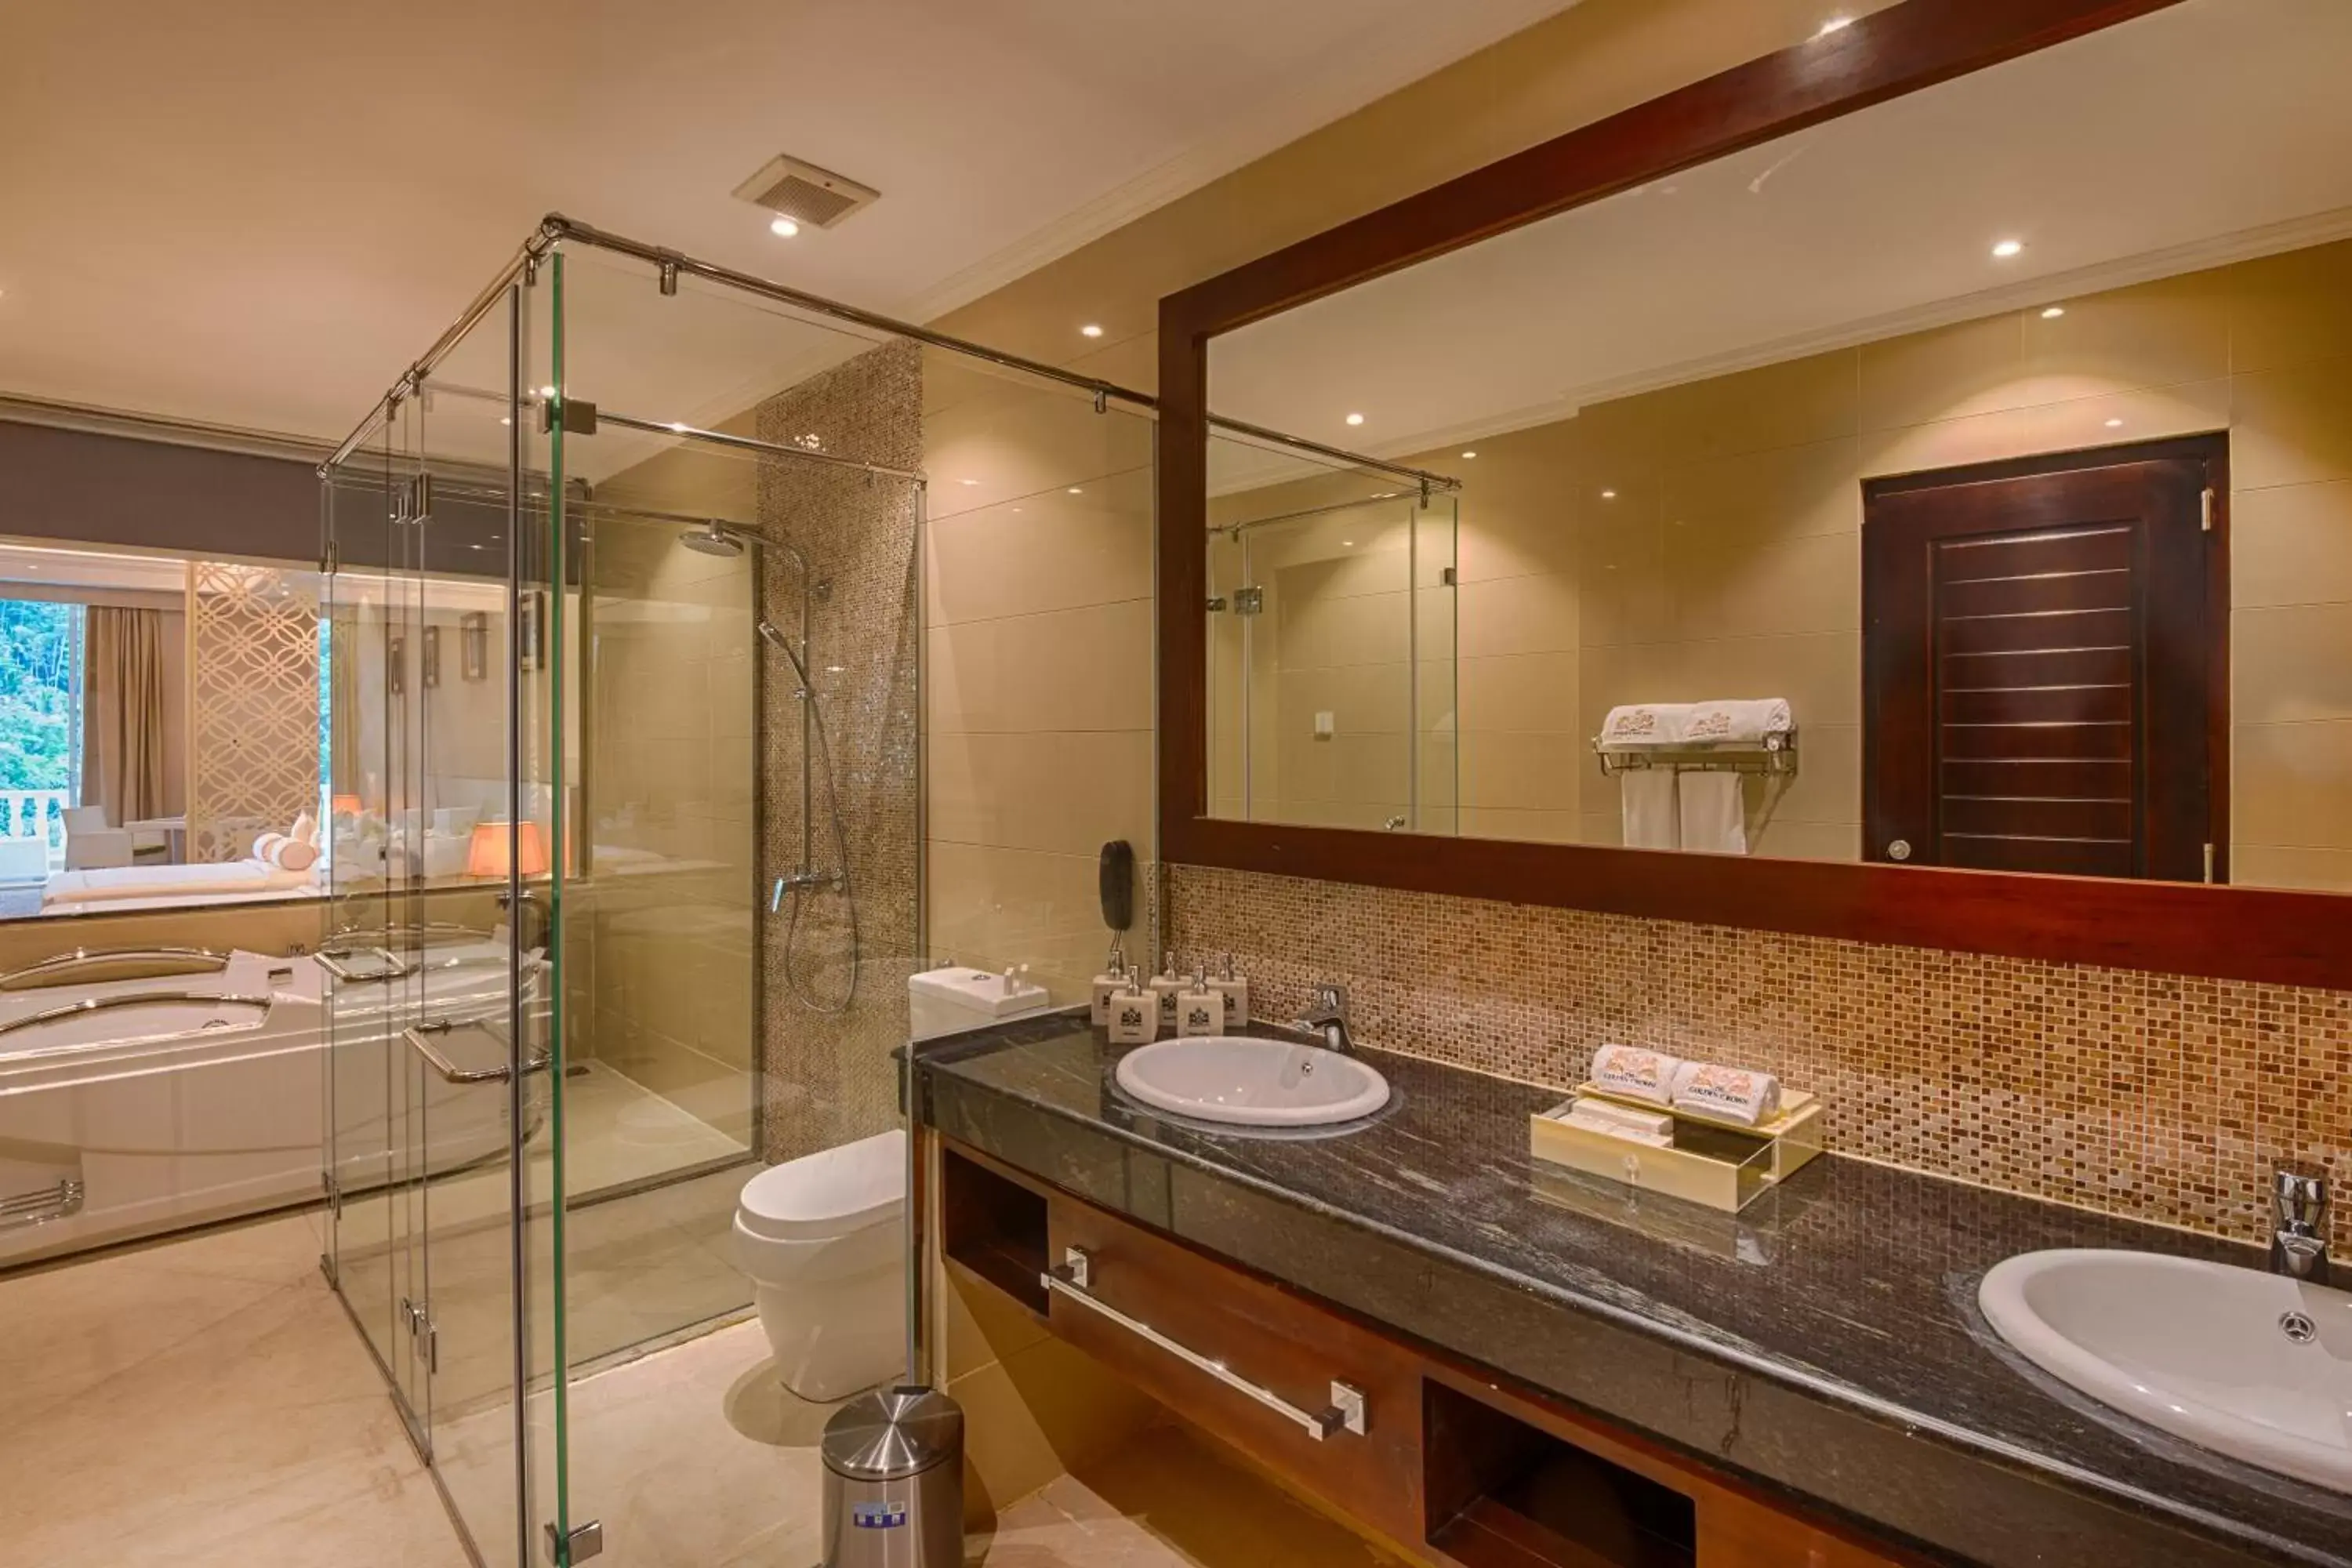 Toilet, Bathroom in The Golden Crown Hotel